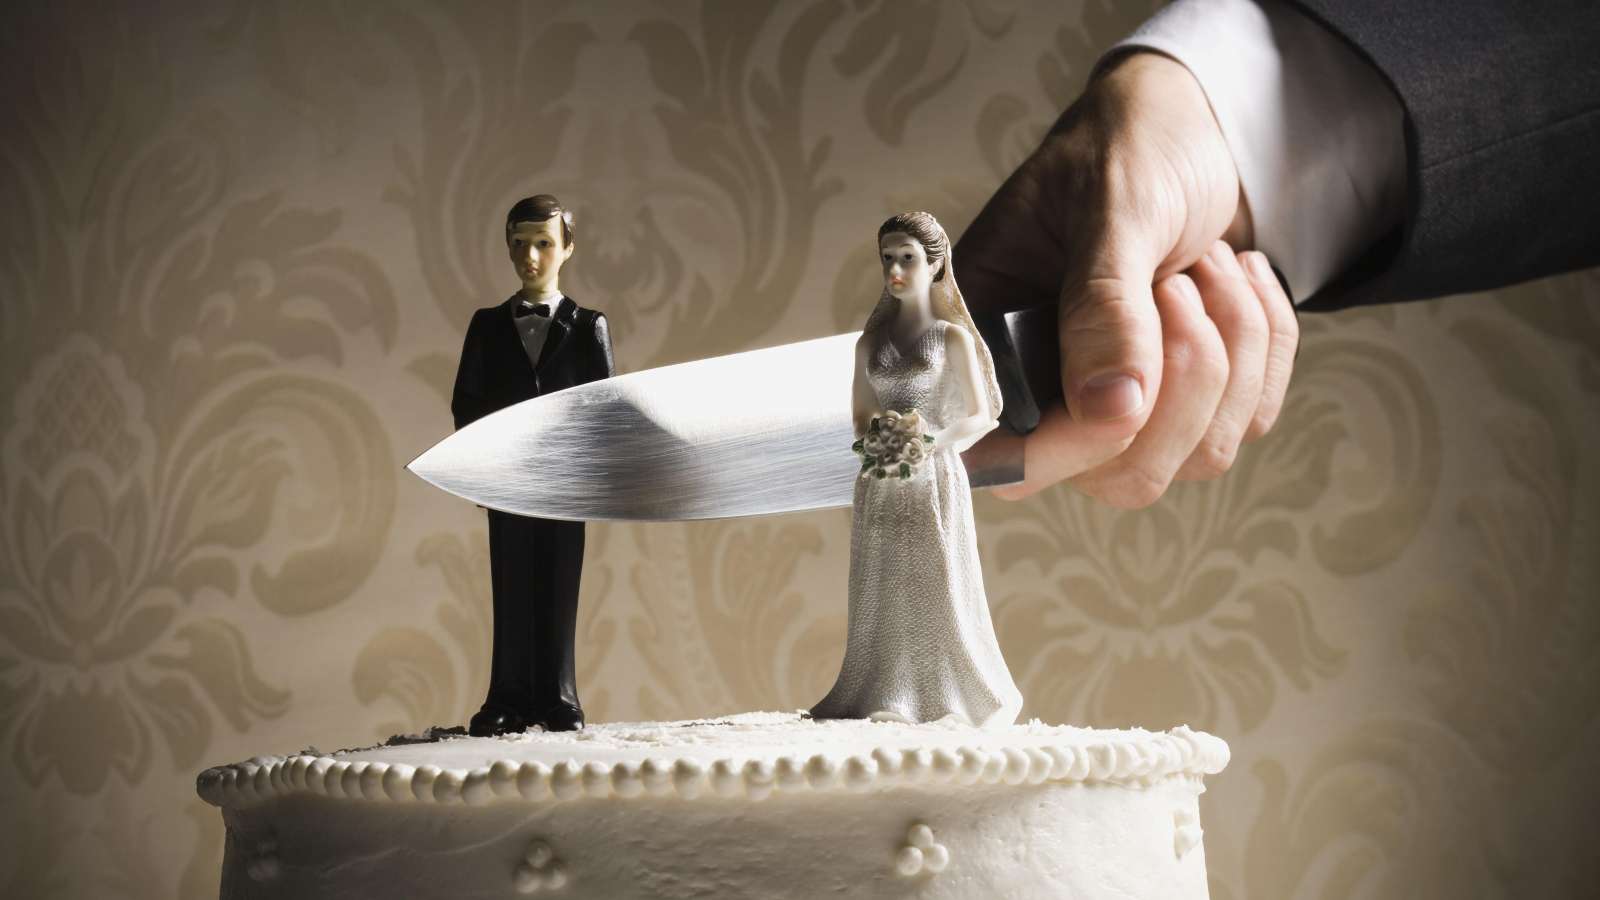 الطلاق وتأثيره على الأبناء - انفصال الوالدين